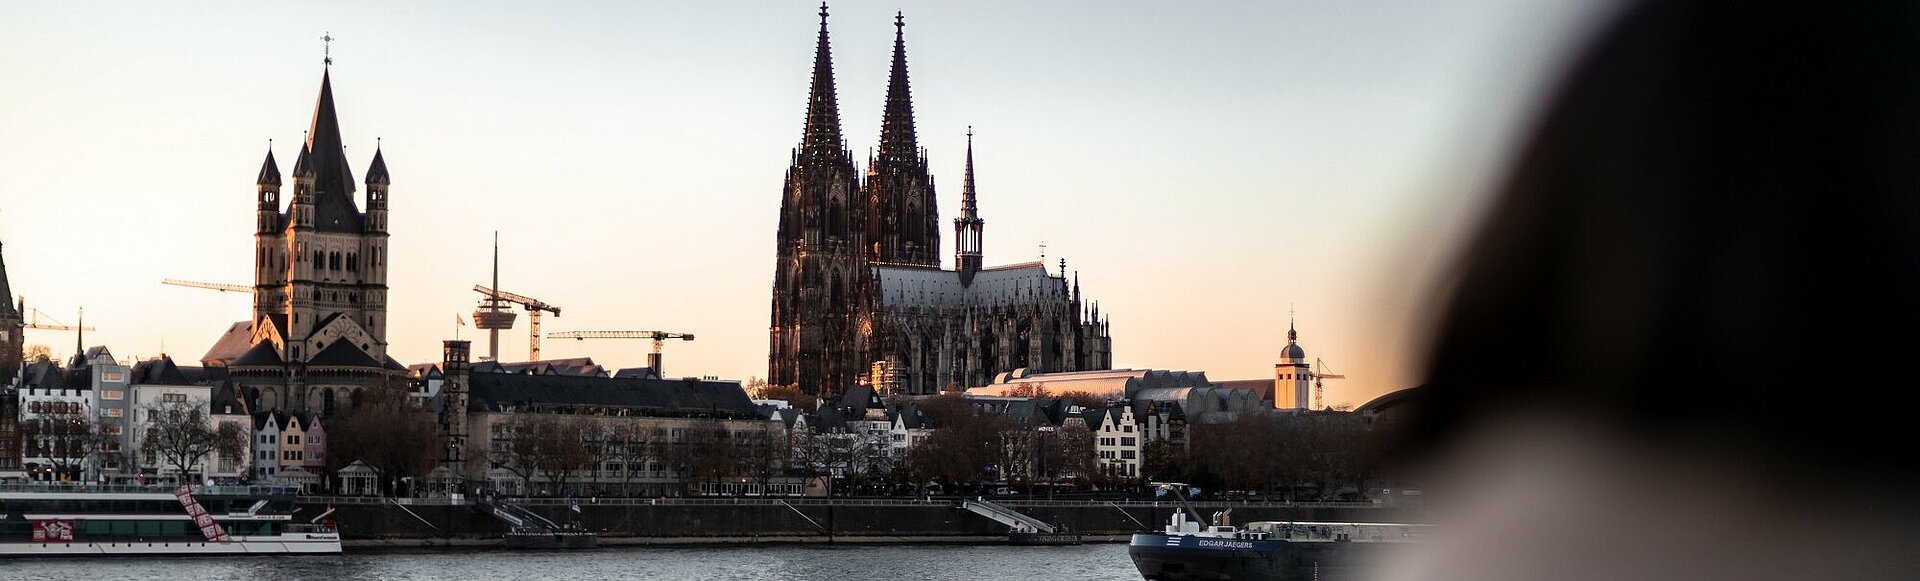 Köln: Dom und Rhein